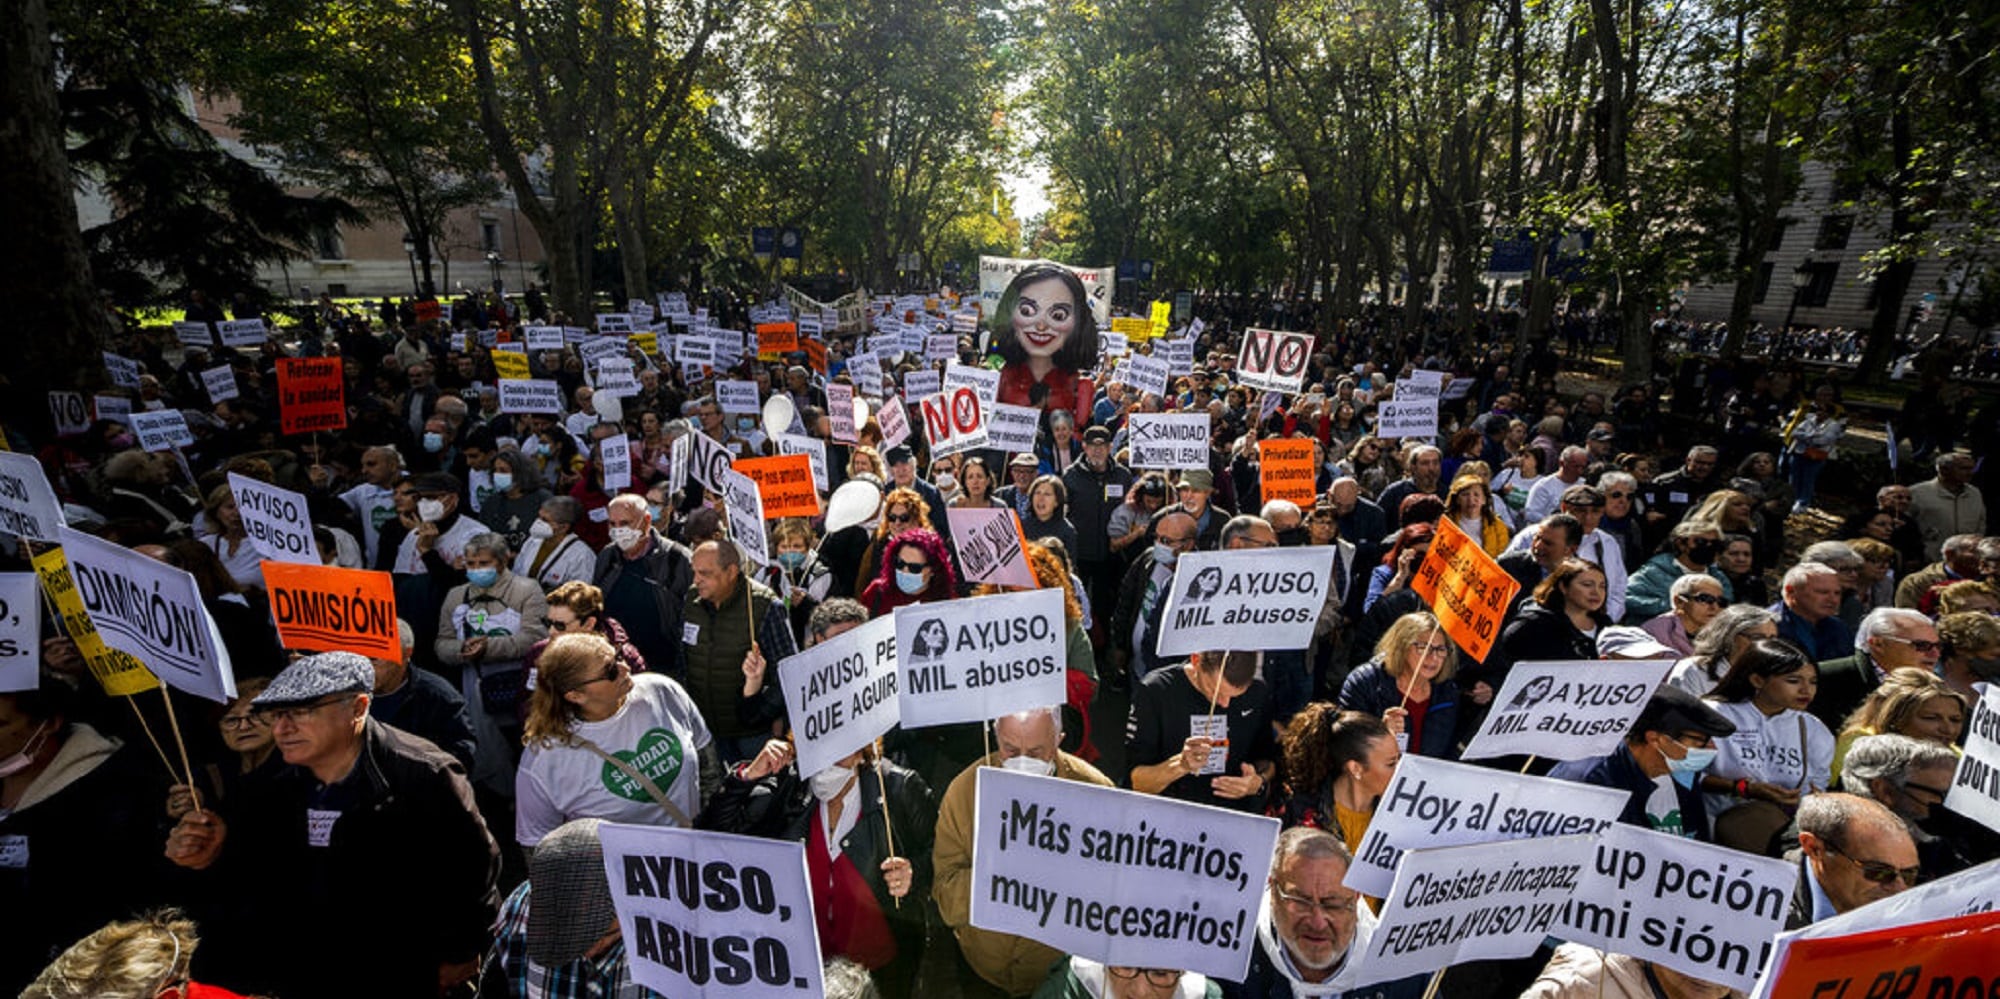 Διαδήλωση για το σύστημα υγείας στην Ισπανία